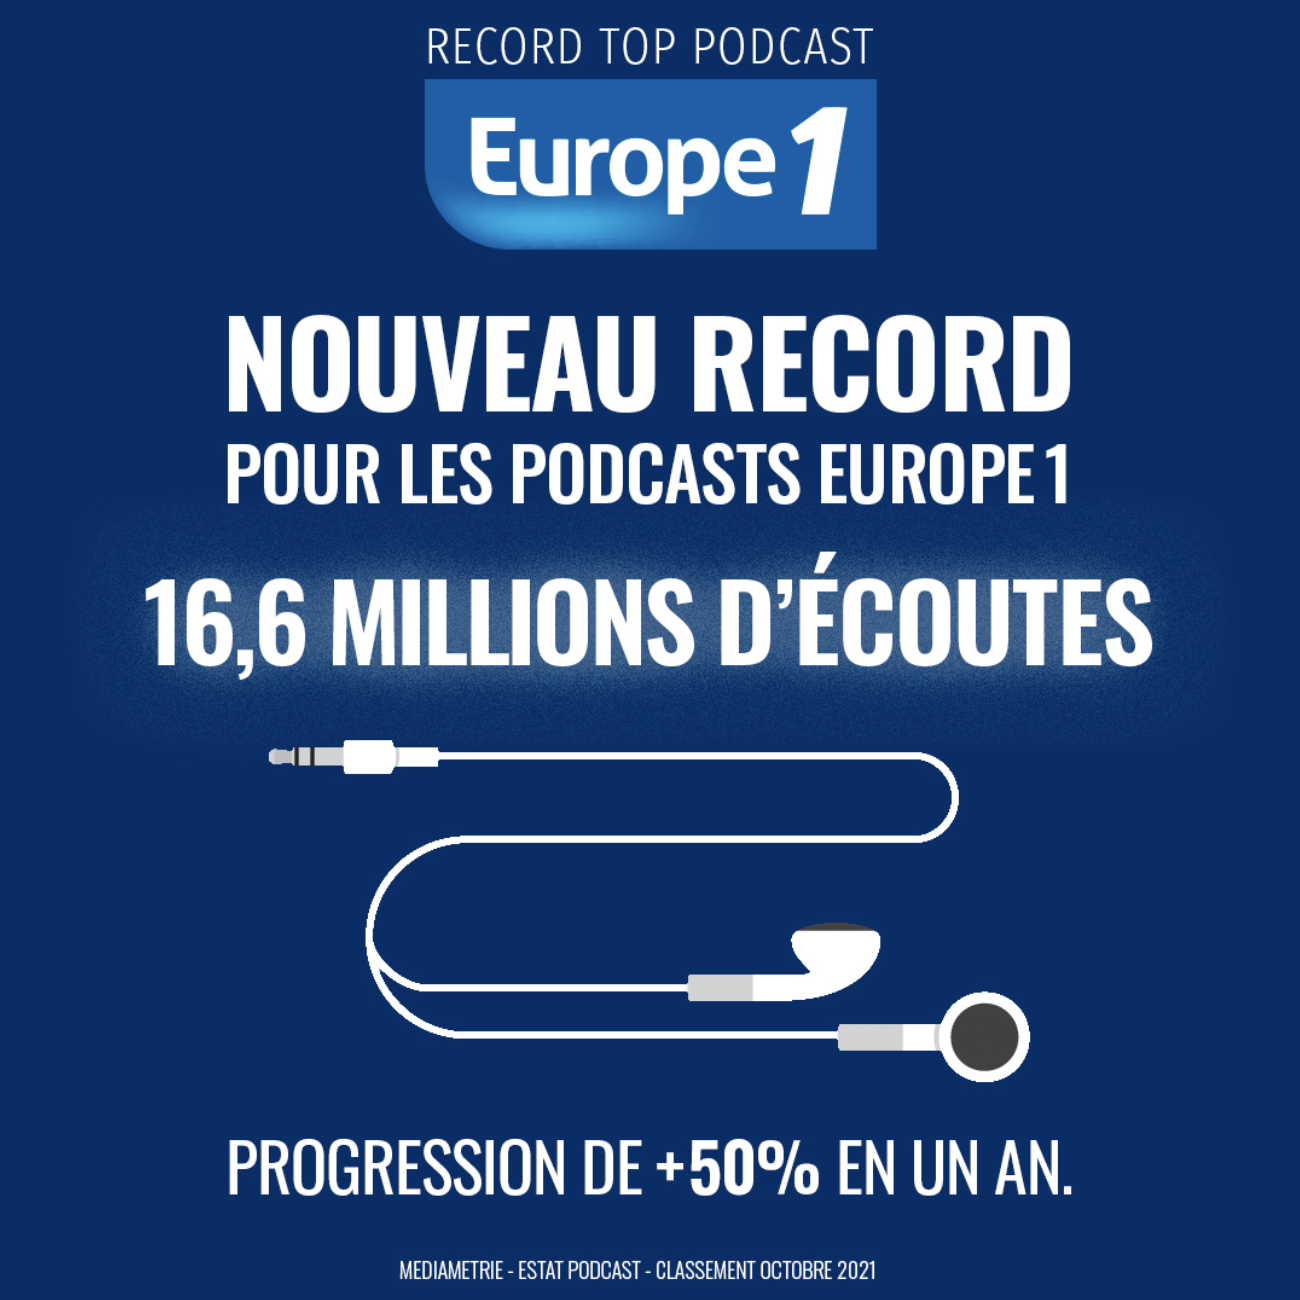 Plus de 16 millions de podcasts pour Europe 1